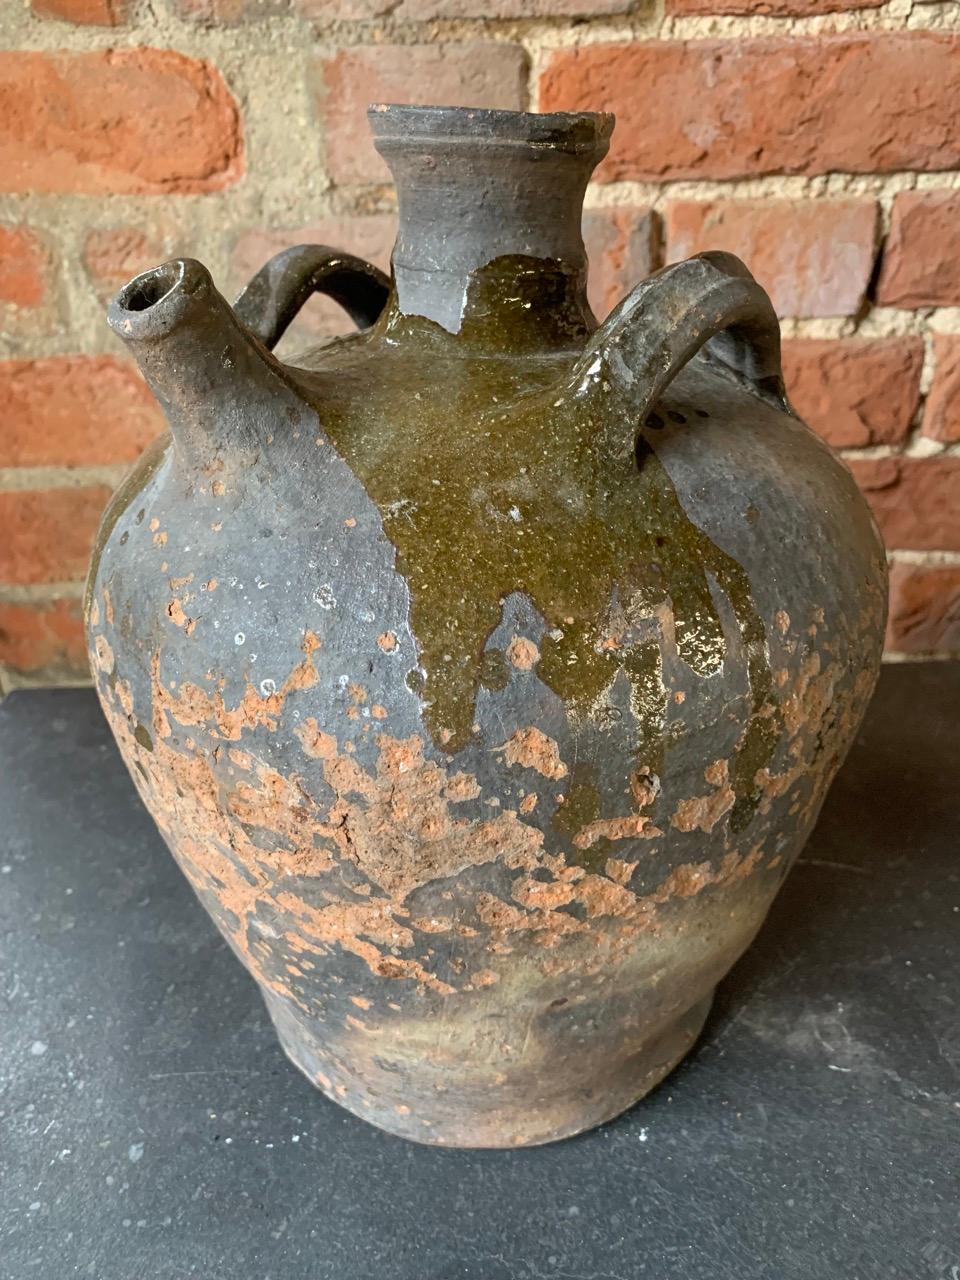 A nice 18th century French Walnut oil jug with a nice glaze.